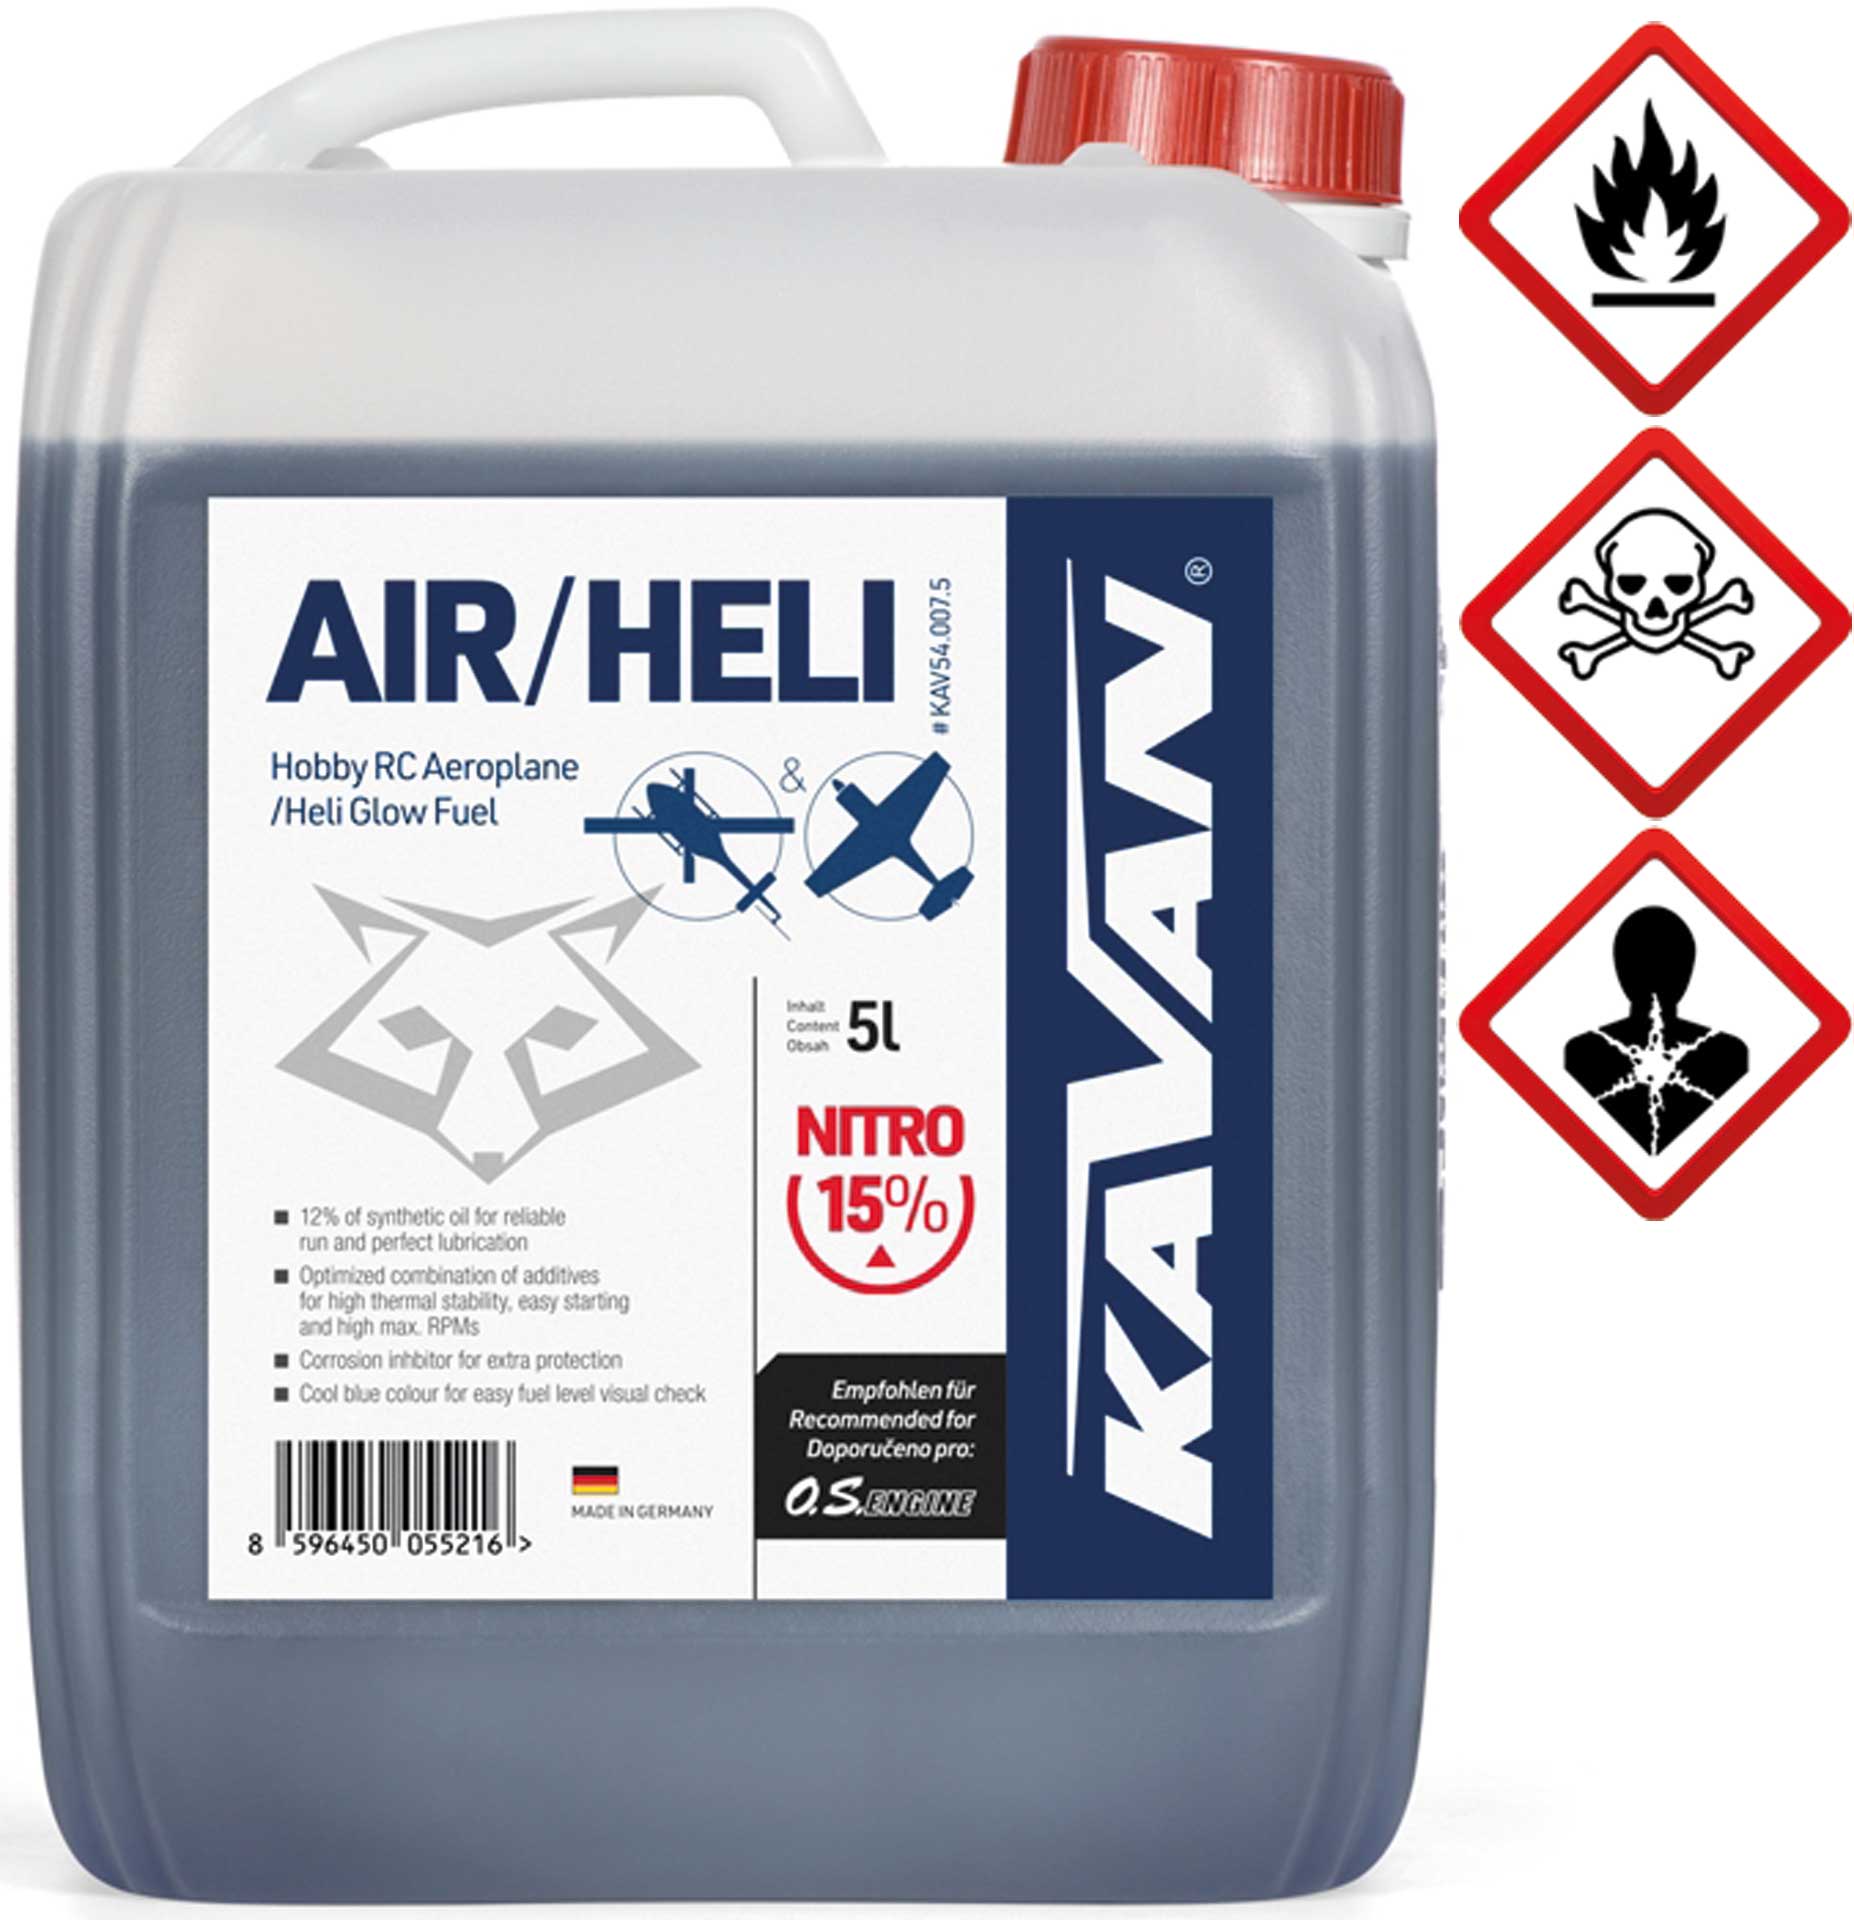 KAVAN Air/Heli 15% nitro 5 litres carburant, Essence, carburant pour moteurs à allumage par incandescence